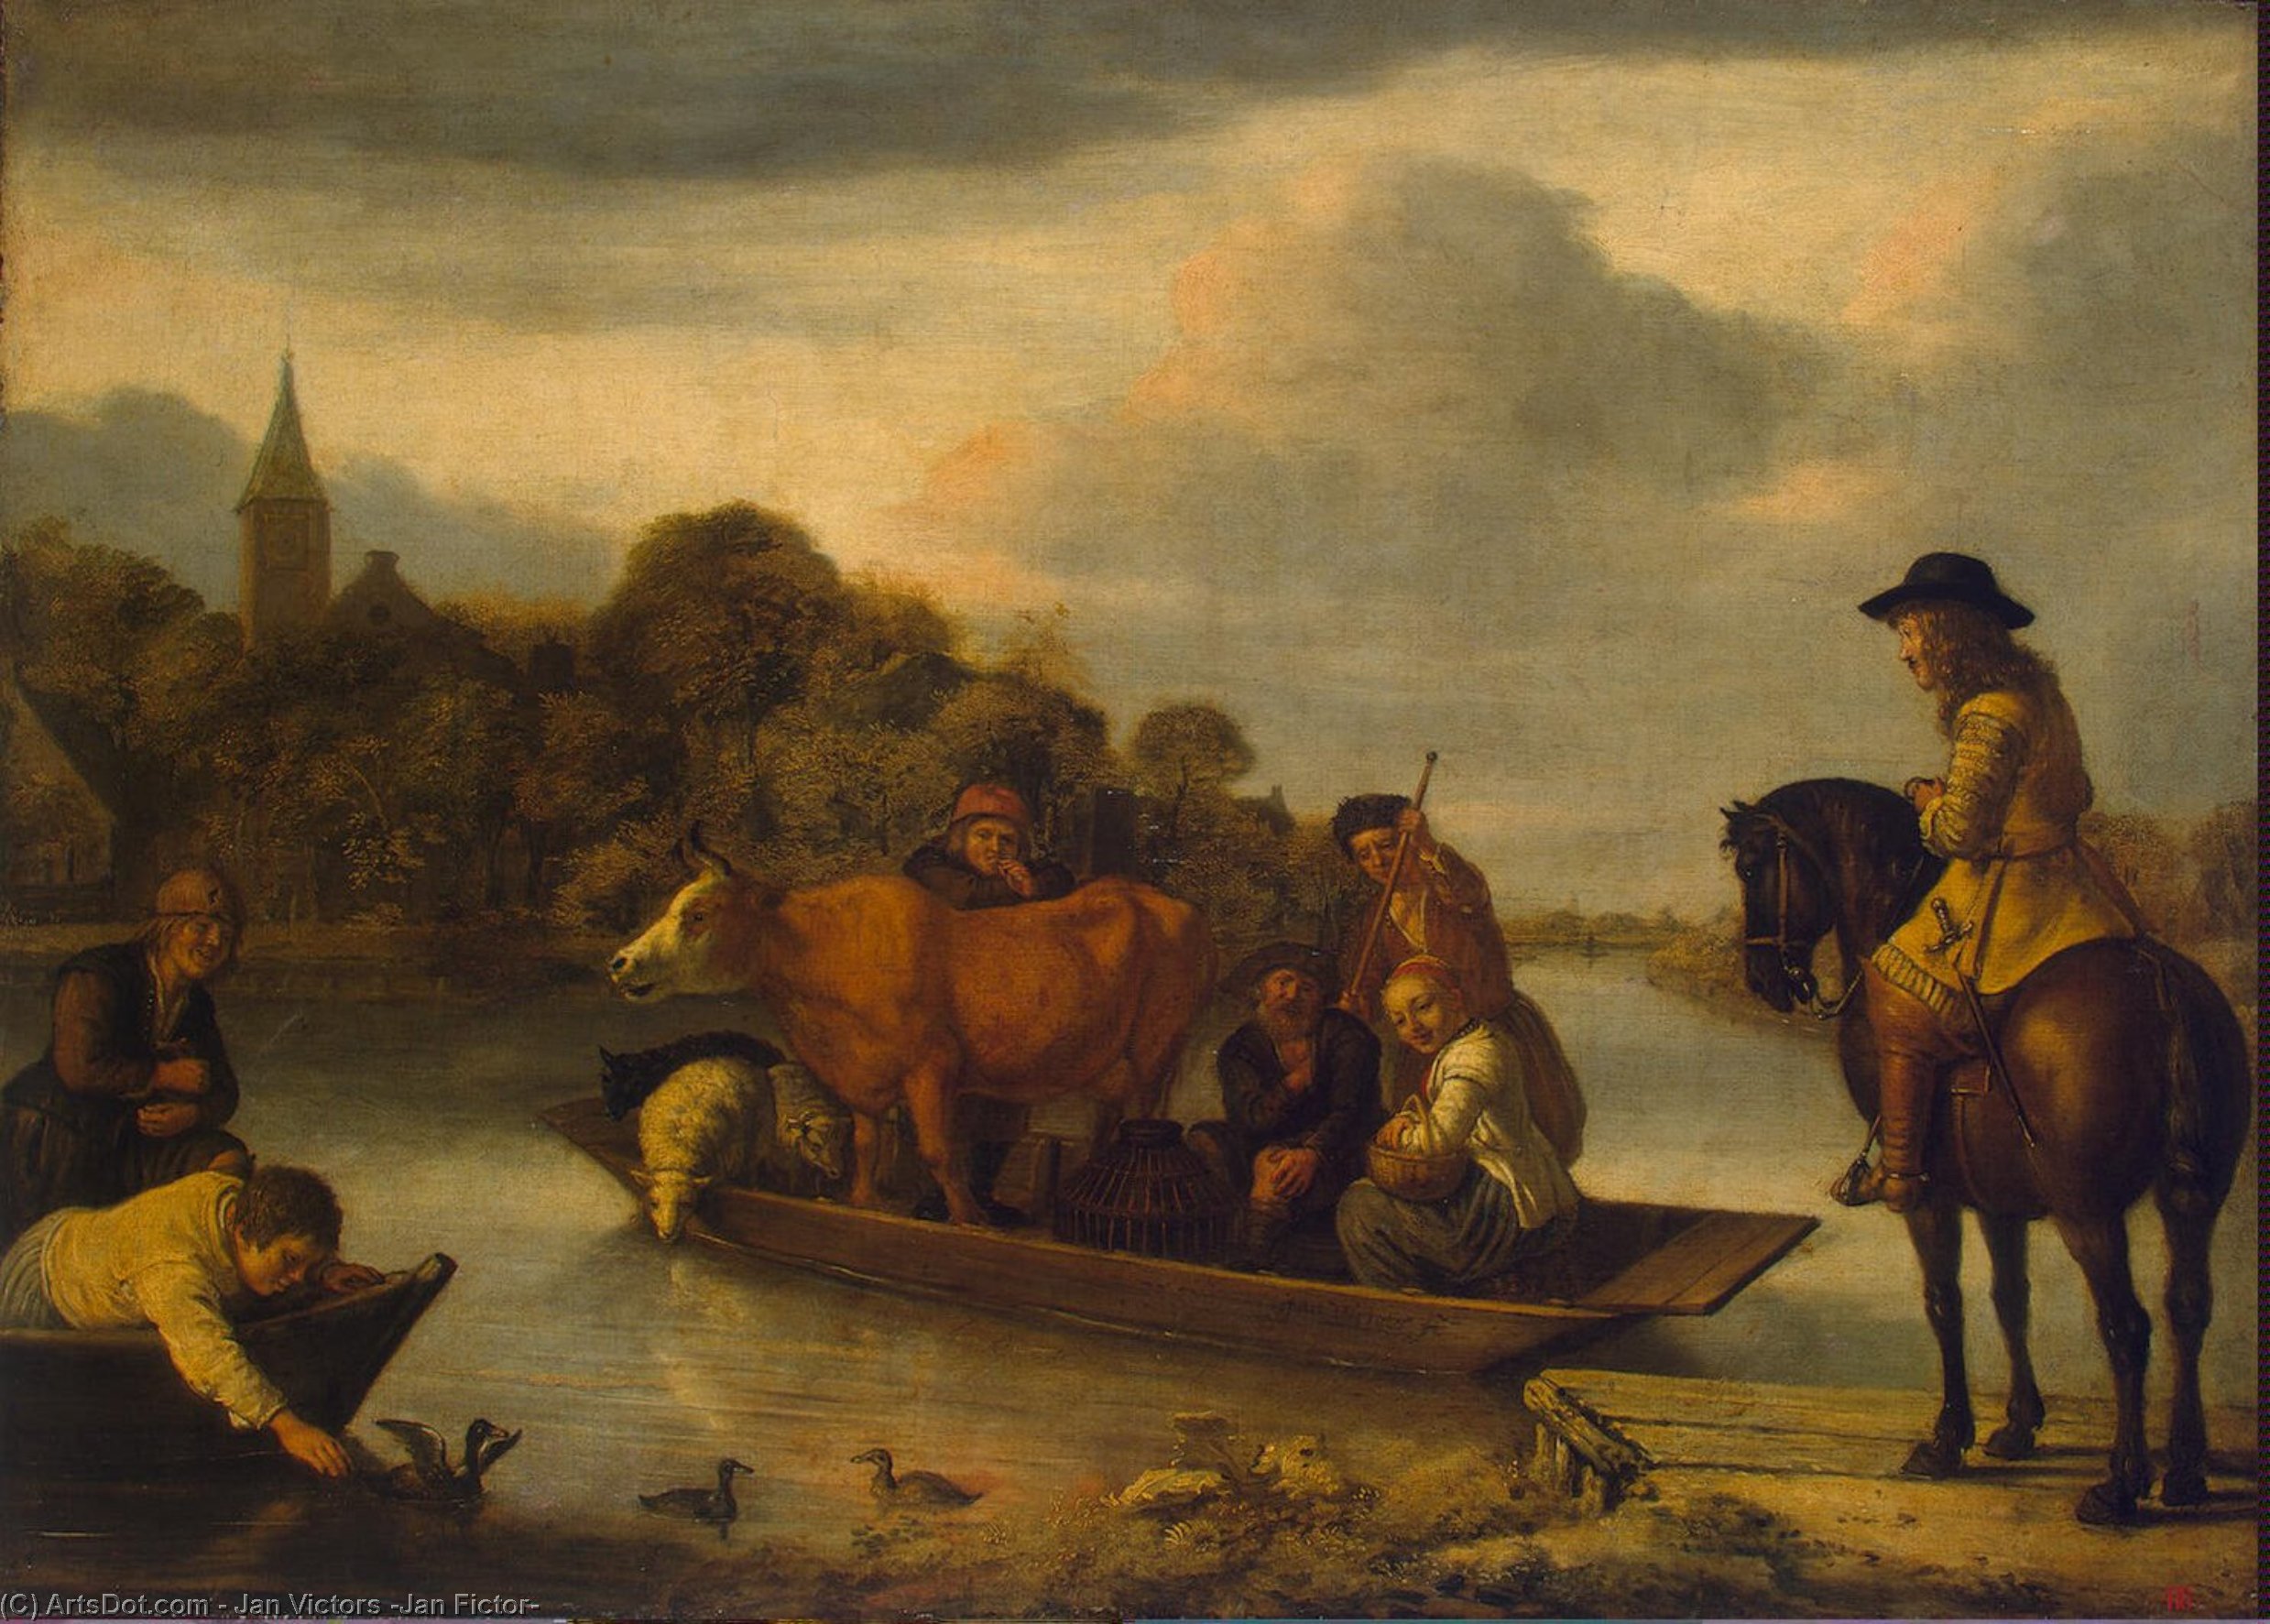 WikiOO.org - Encyclopedia of Fine Arts - Lukisan, Artwork Jan Victors (Jan Fictor) - Ferryboat